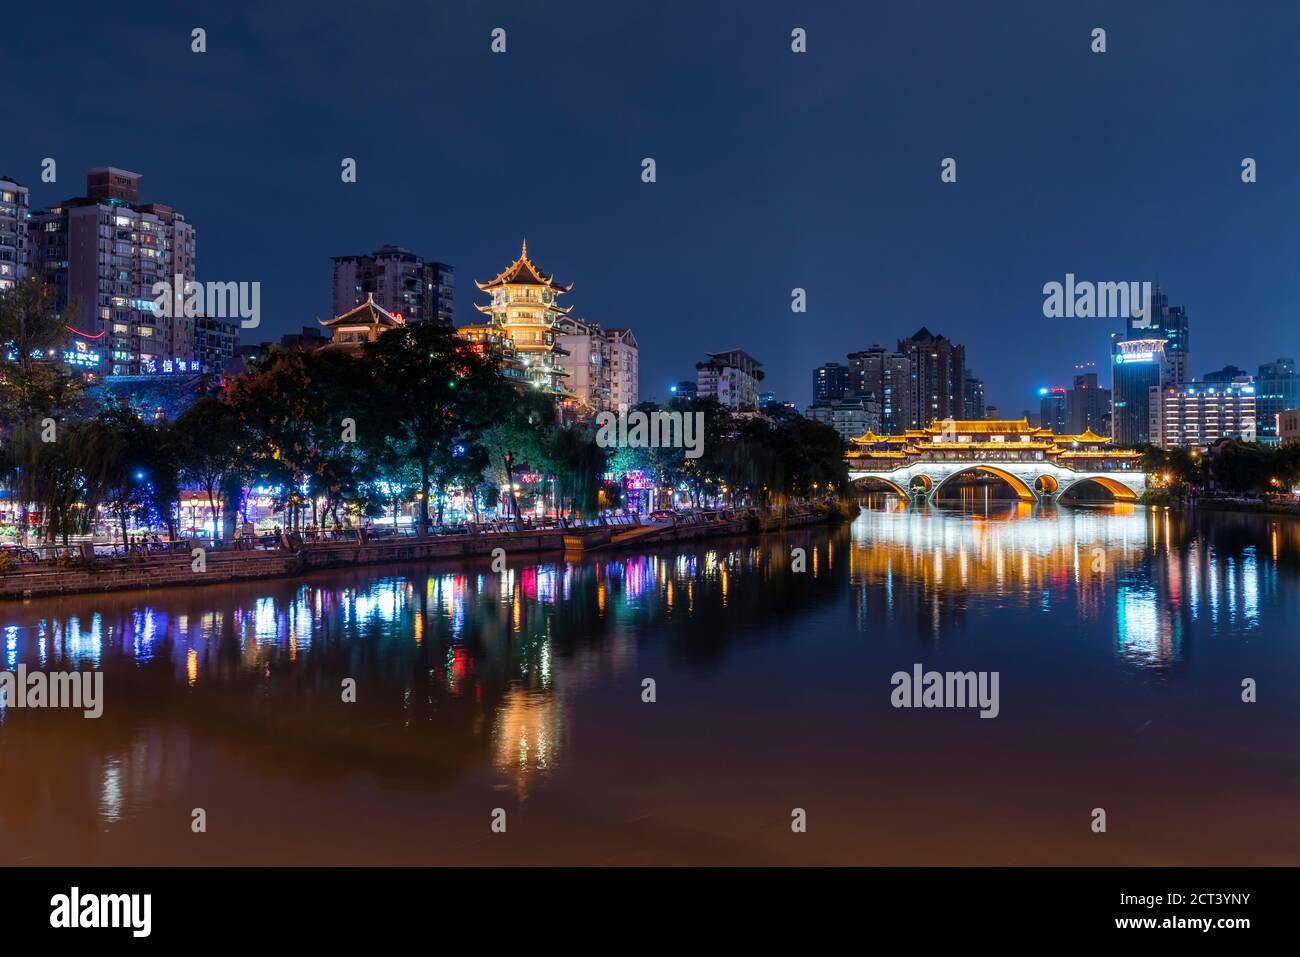 View of Chengdu city in China at night Stock Photo